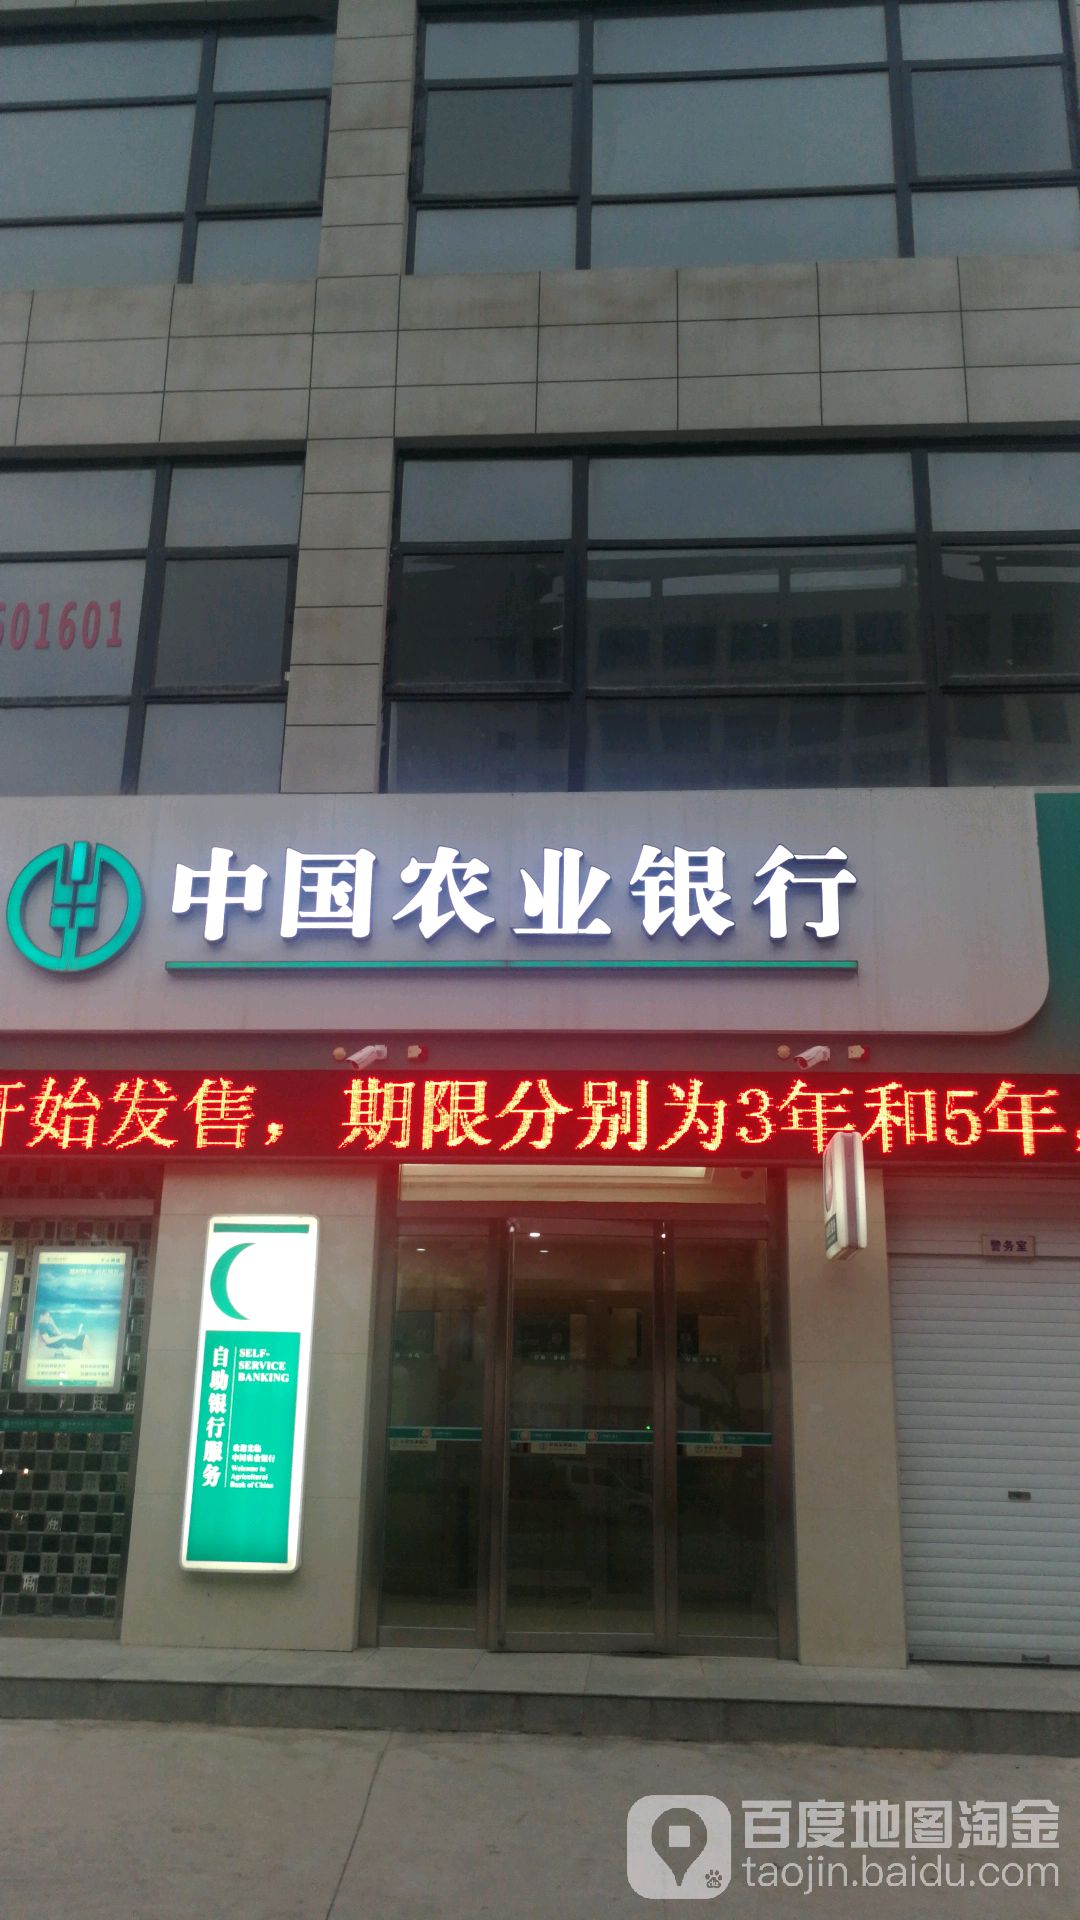 中國農業銀行24小時自助銀行服務